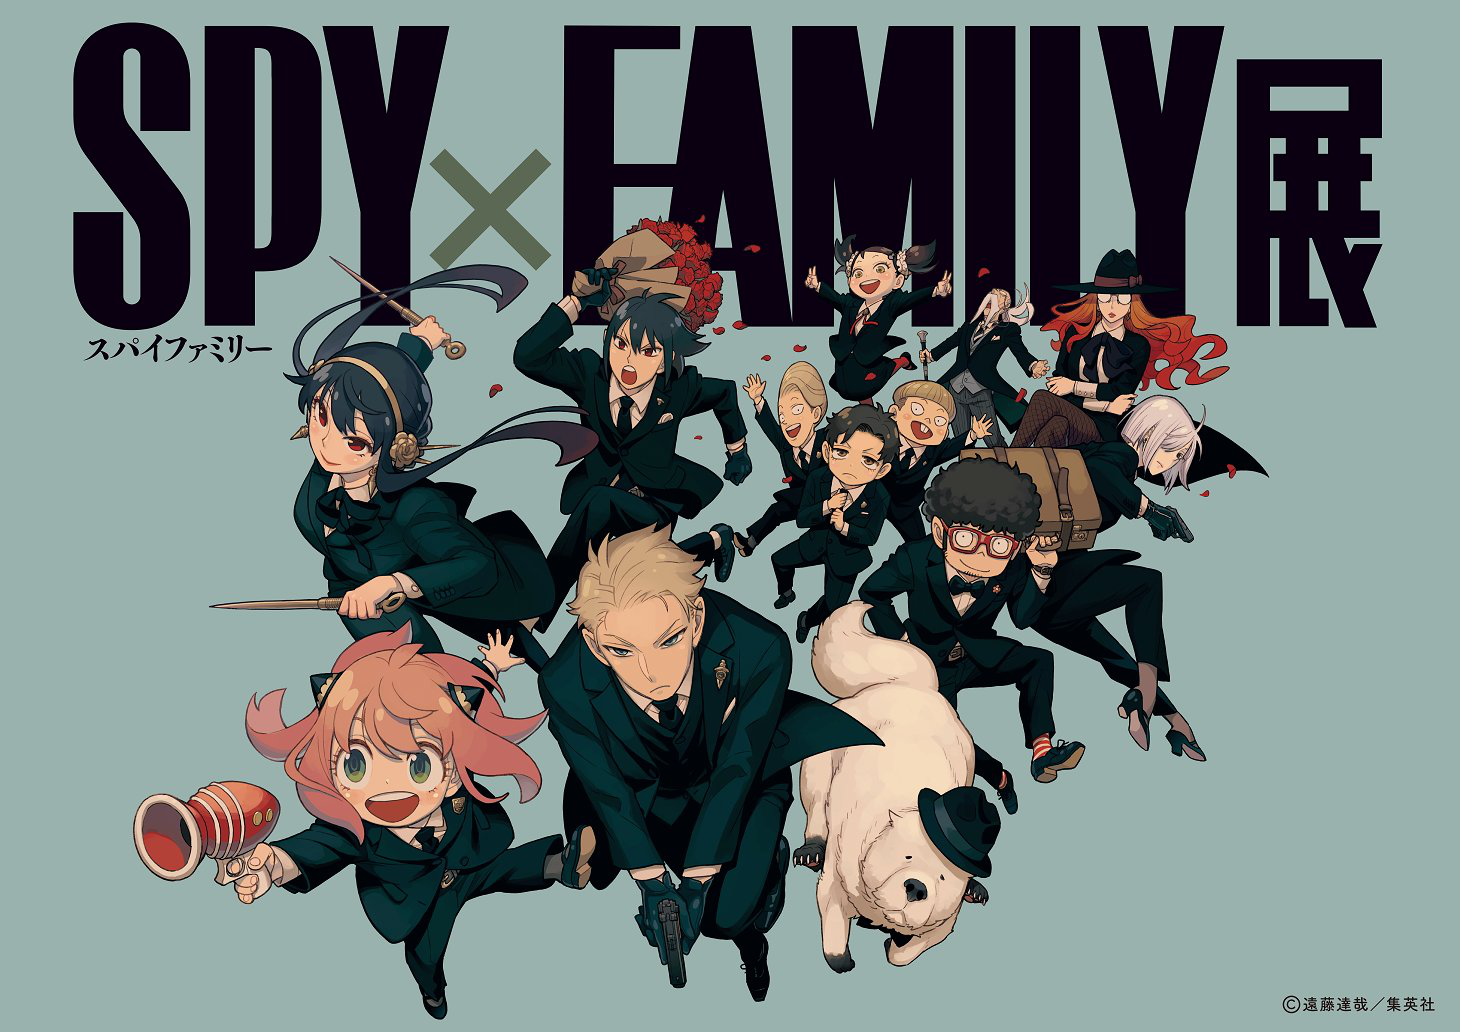 Assistir Spy x Family 2 Todos os episódios online.